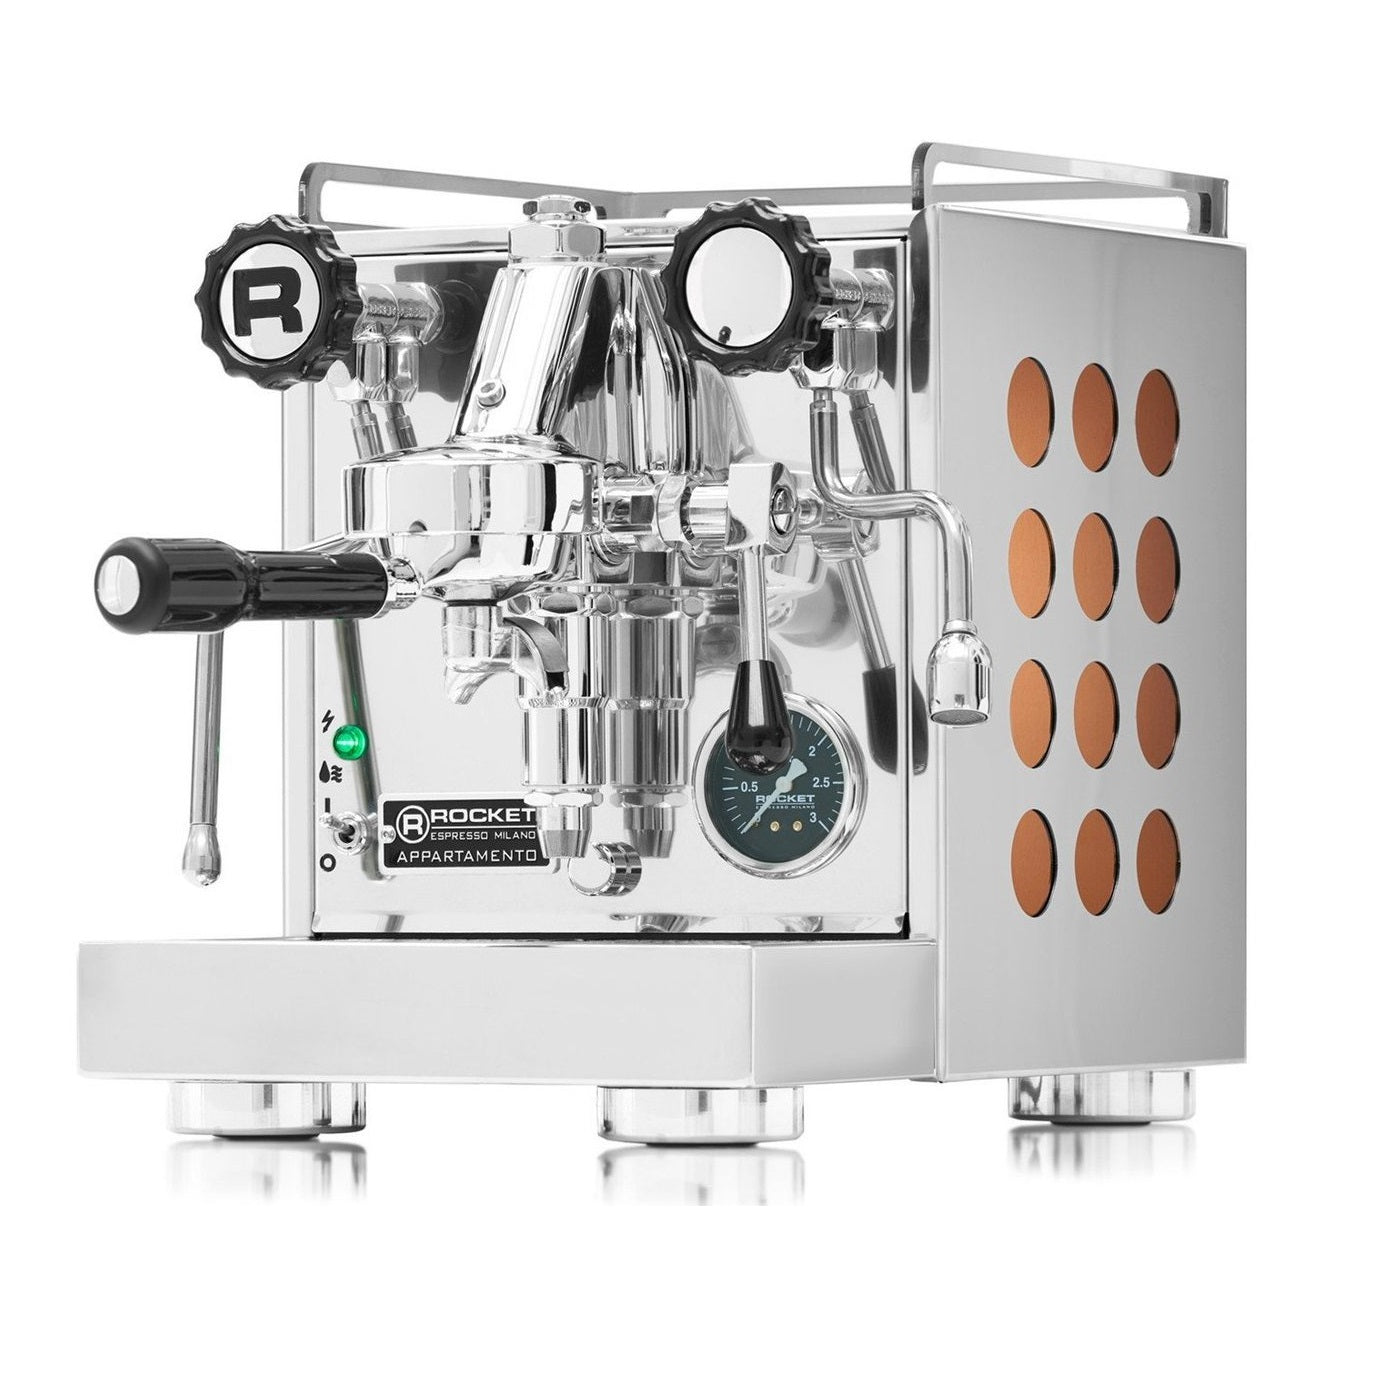 Rocket Appartamento Espresso Machine with copper insert